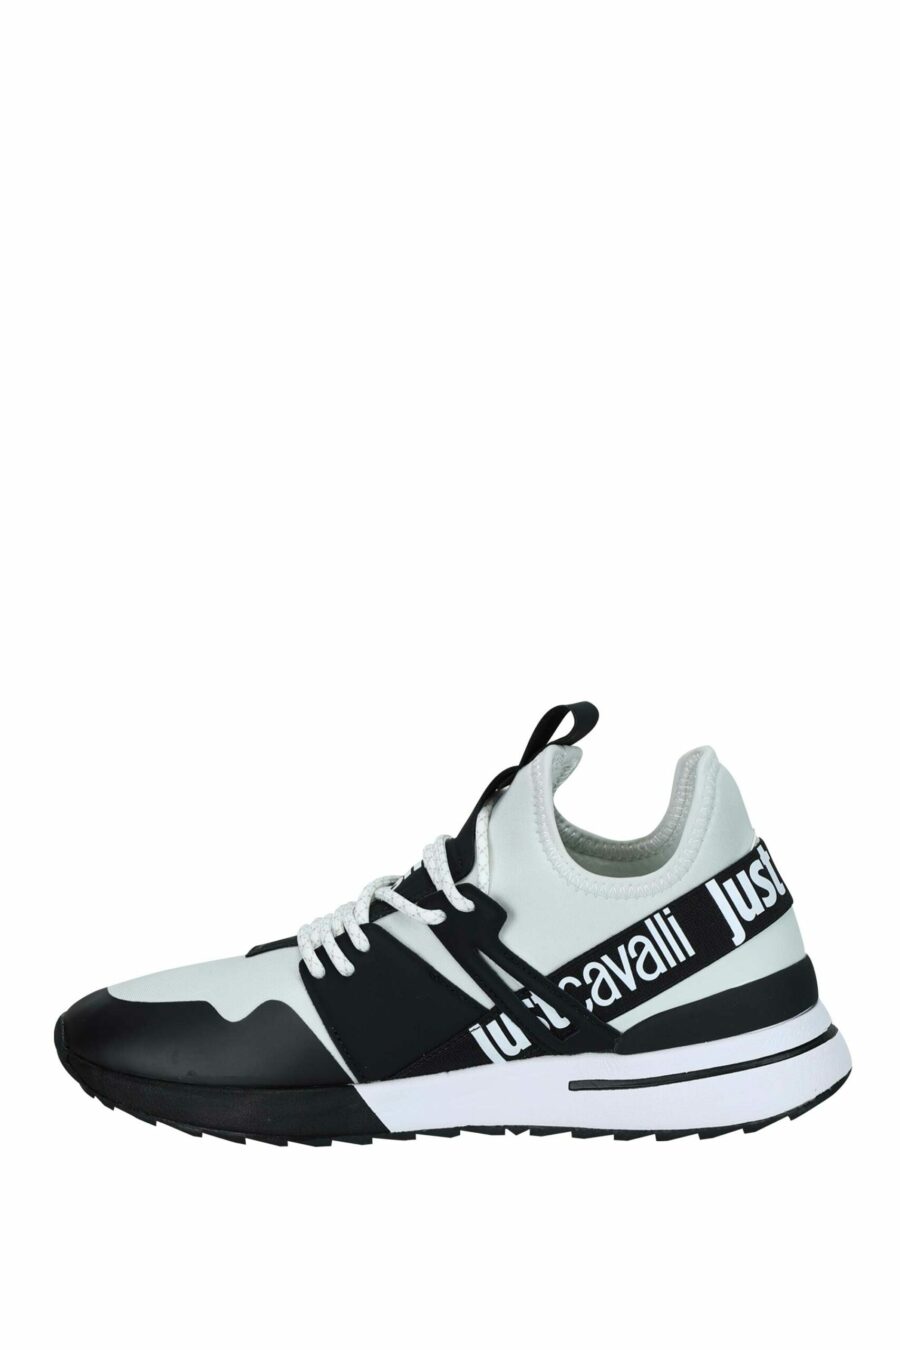 Zapatillas bicolor blancas y negras con logo en cinta - 8052672738127 2 scaled